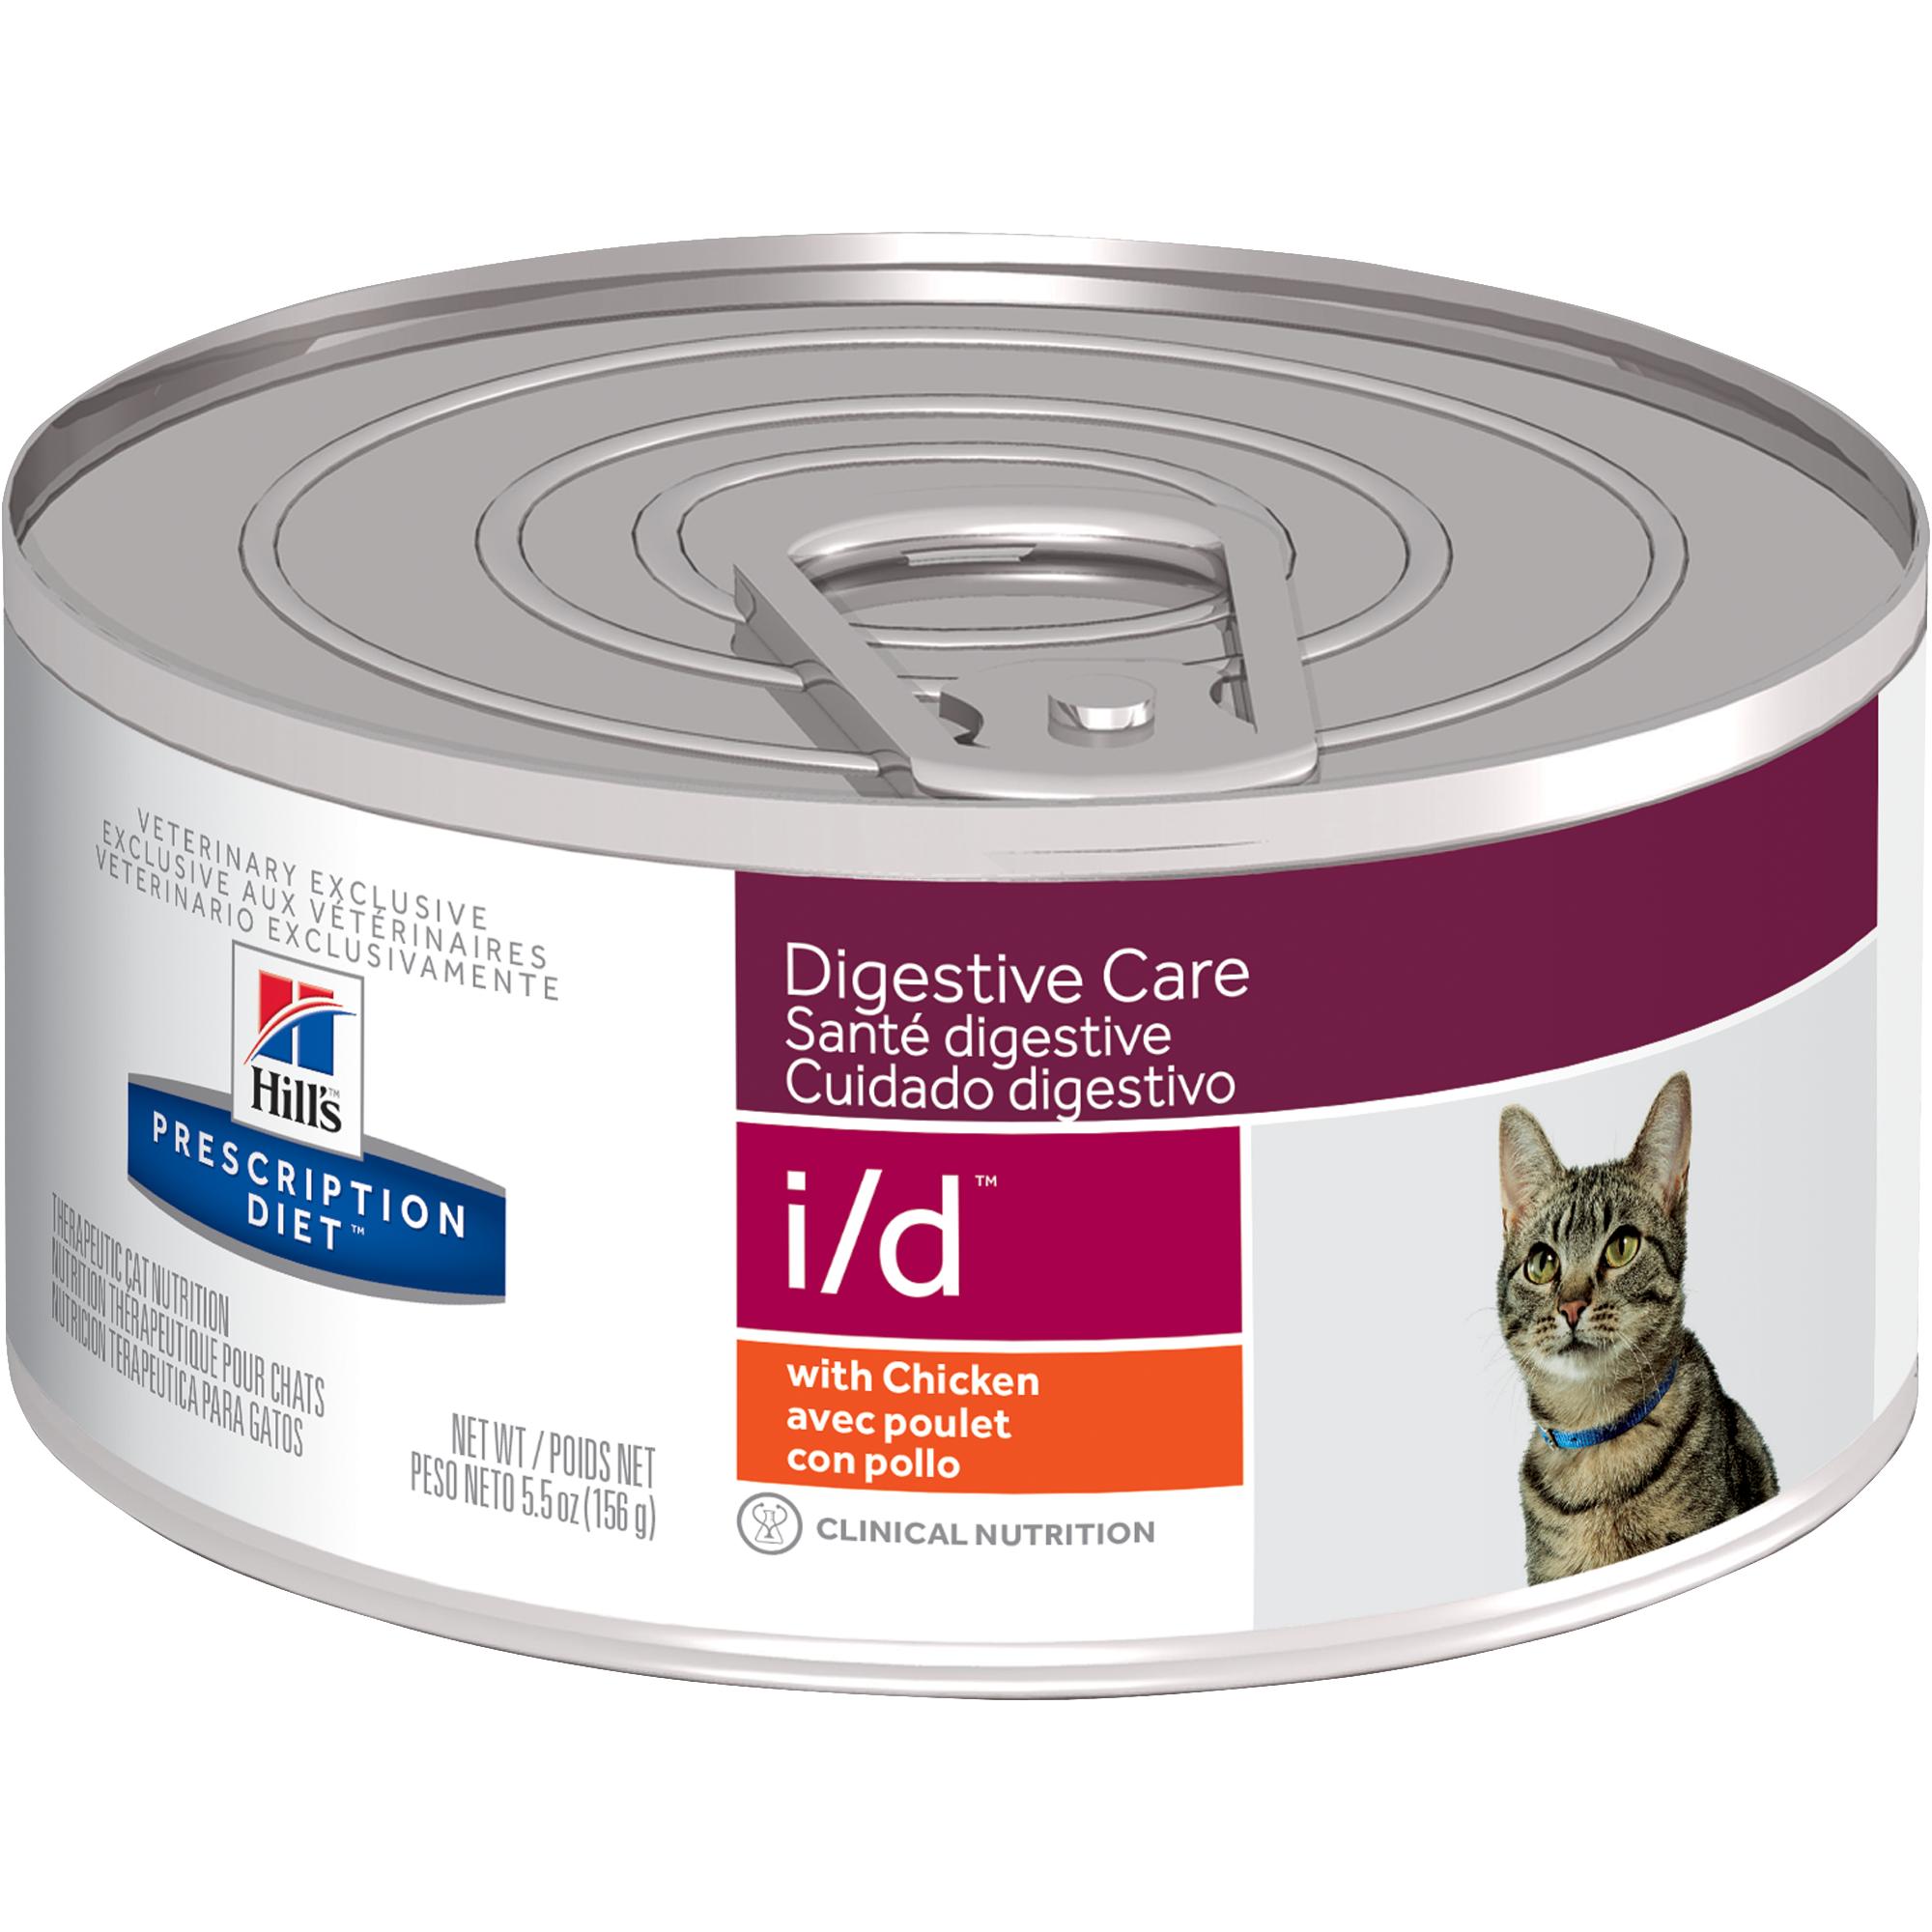 Влажный корм хиллс для кошек. Хиллс Digestive Care для кошек. Hills Digestive Care i/d для собак. Hills Digestive Care i/d для кошек 5. Хиллс ИД для собак.